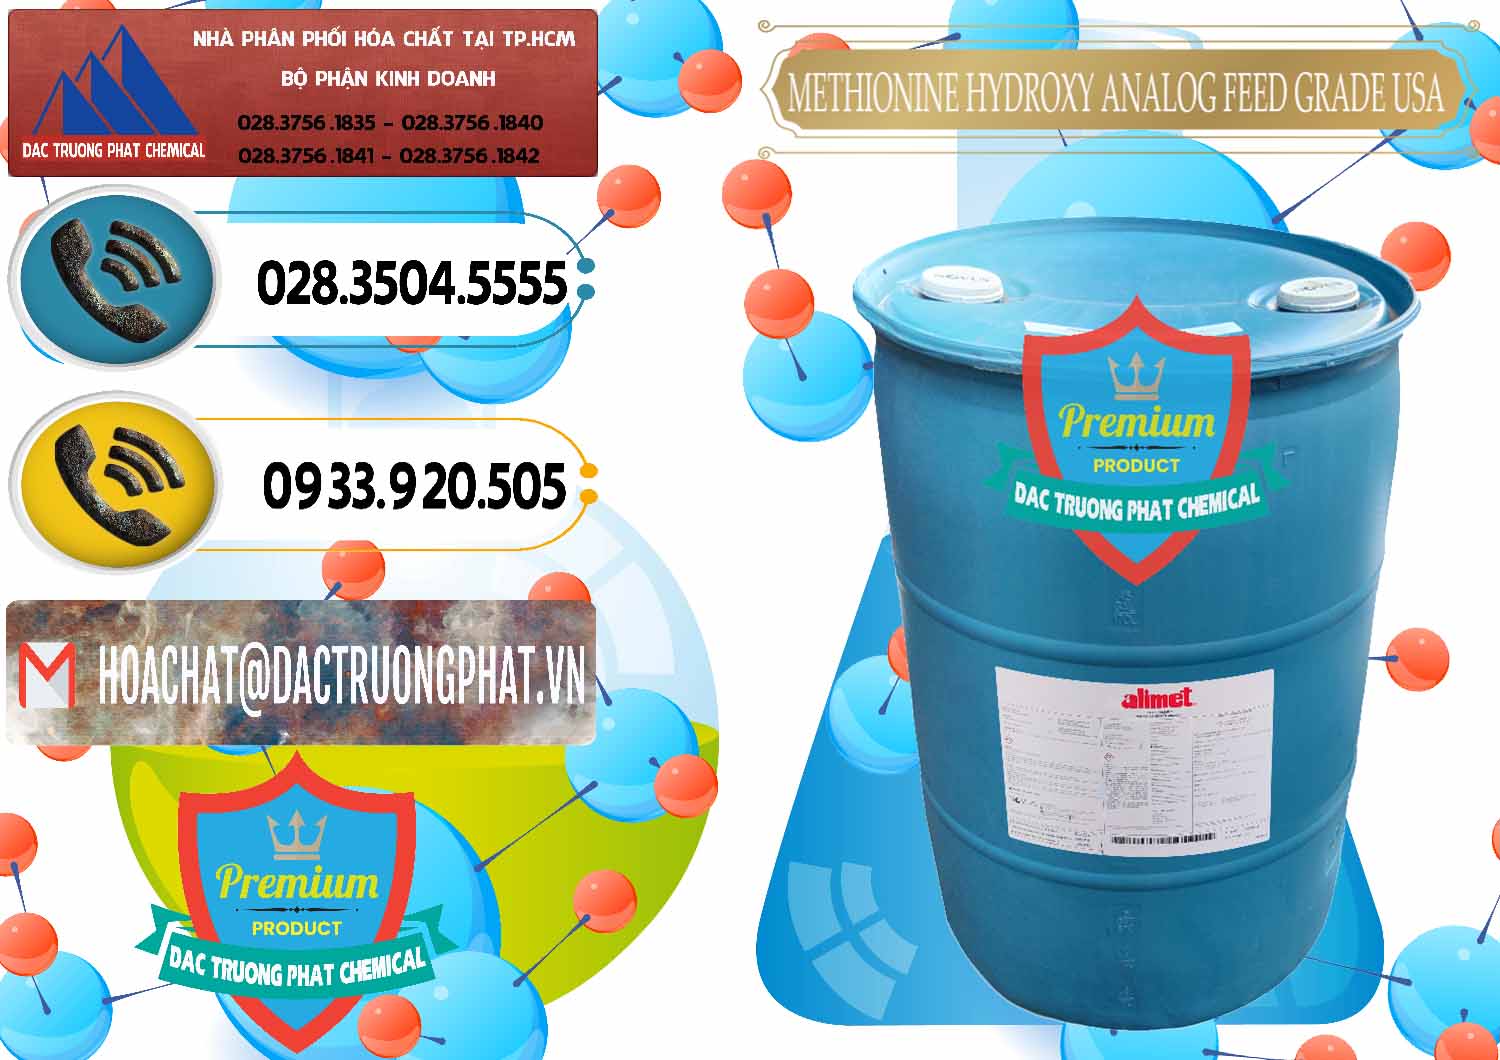 Cty chuyên phân phối - bán Methionine Nước - Dạng Lỏng Novus Alimet Mỹ USA - 0316 - Nơi chuyên cung cấp & nhập khẩu hóa chất tại TP.HCM - hoachatdetnhuom.vn